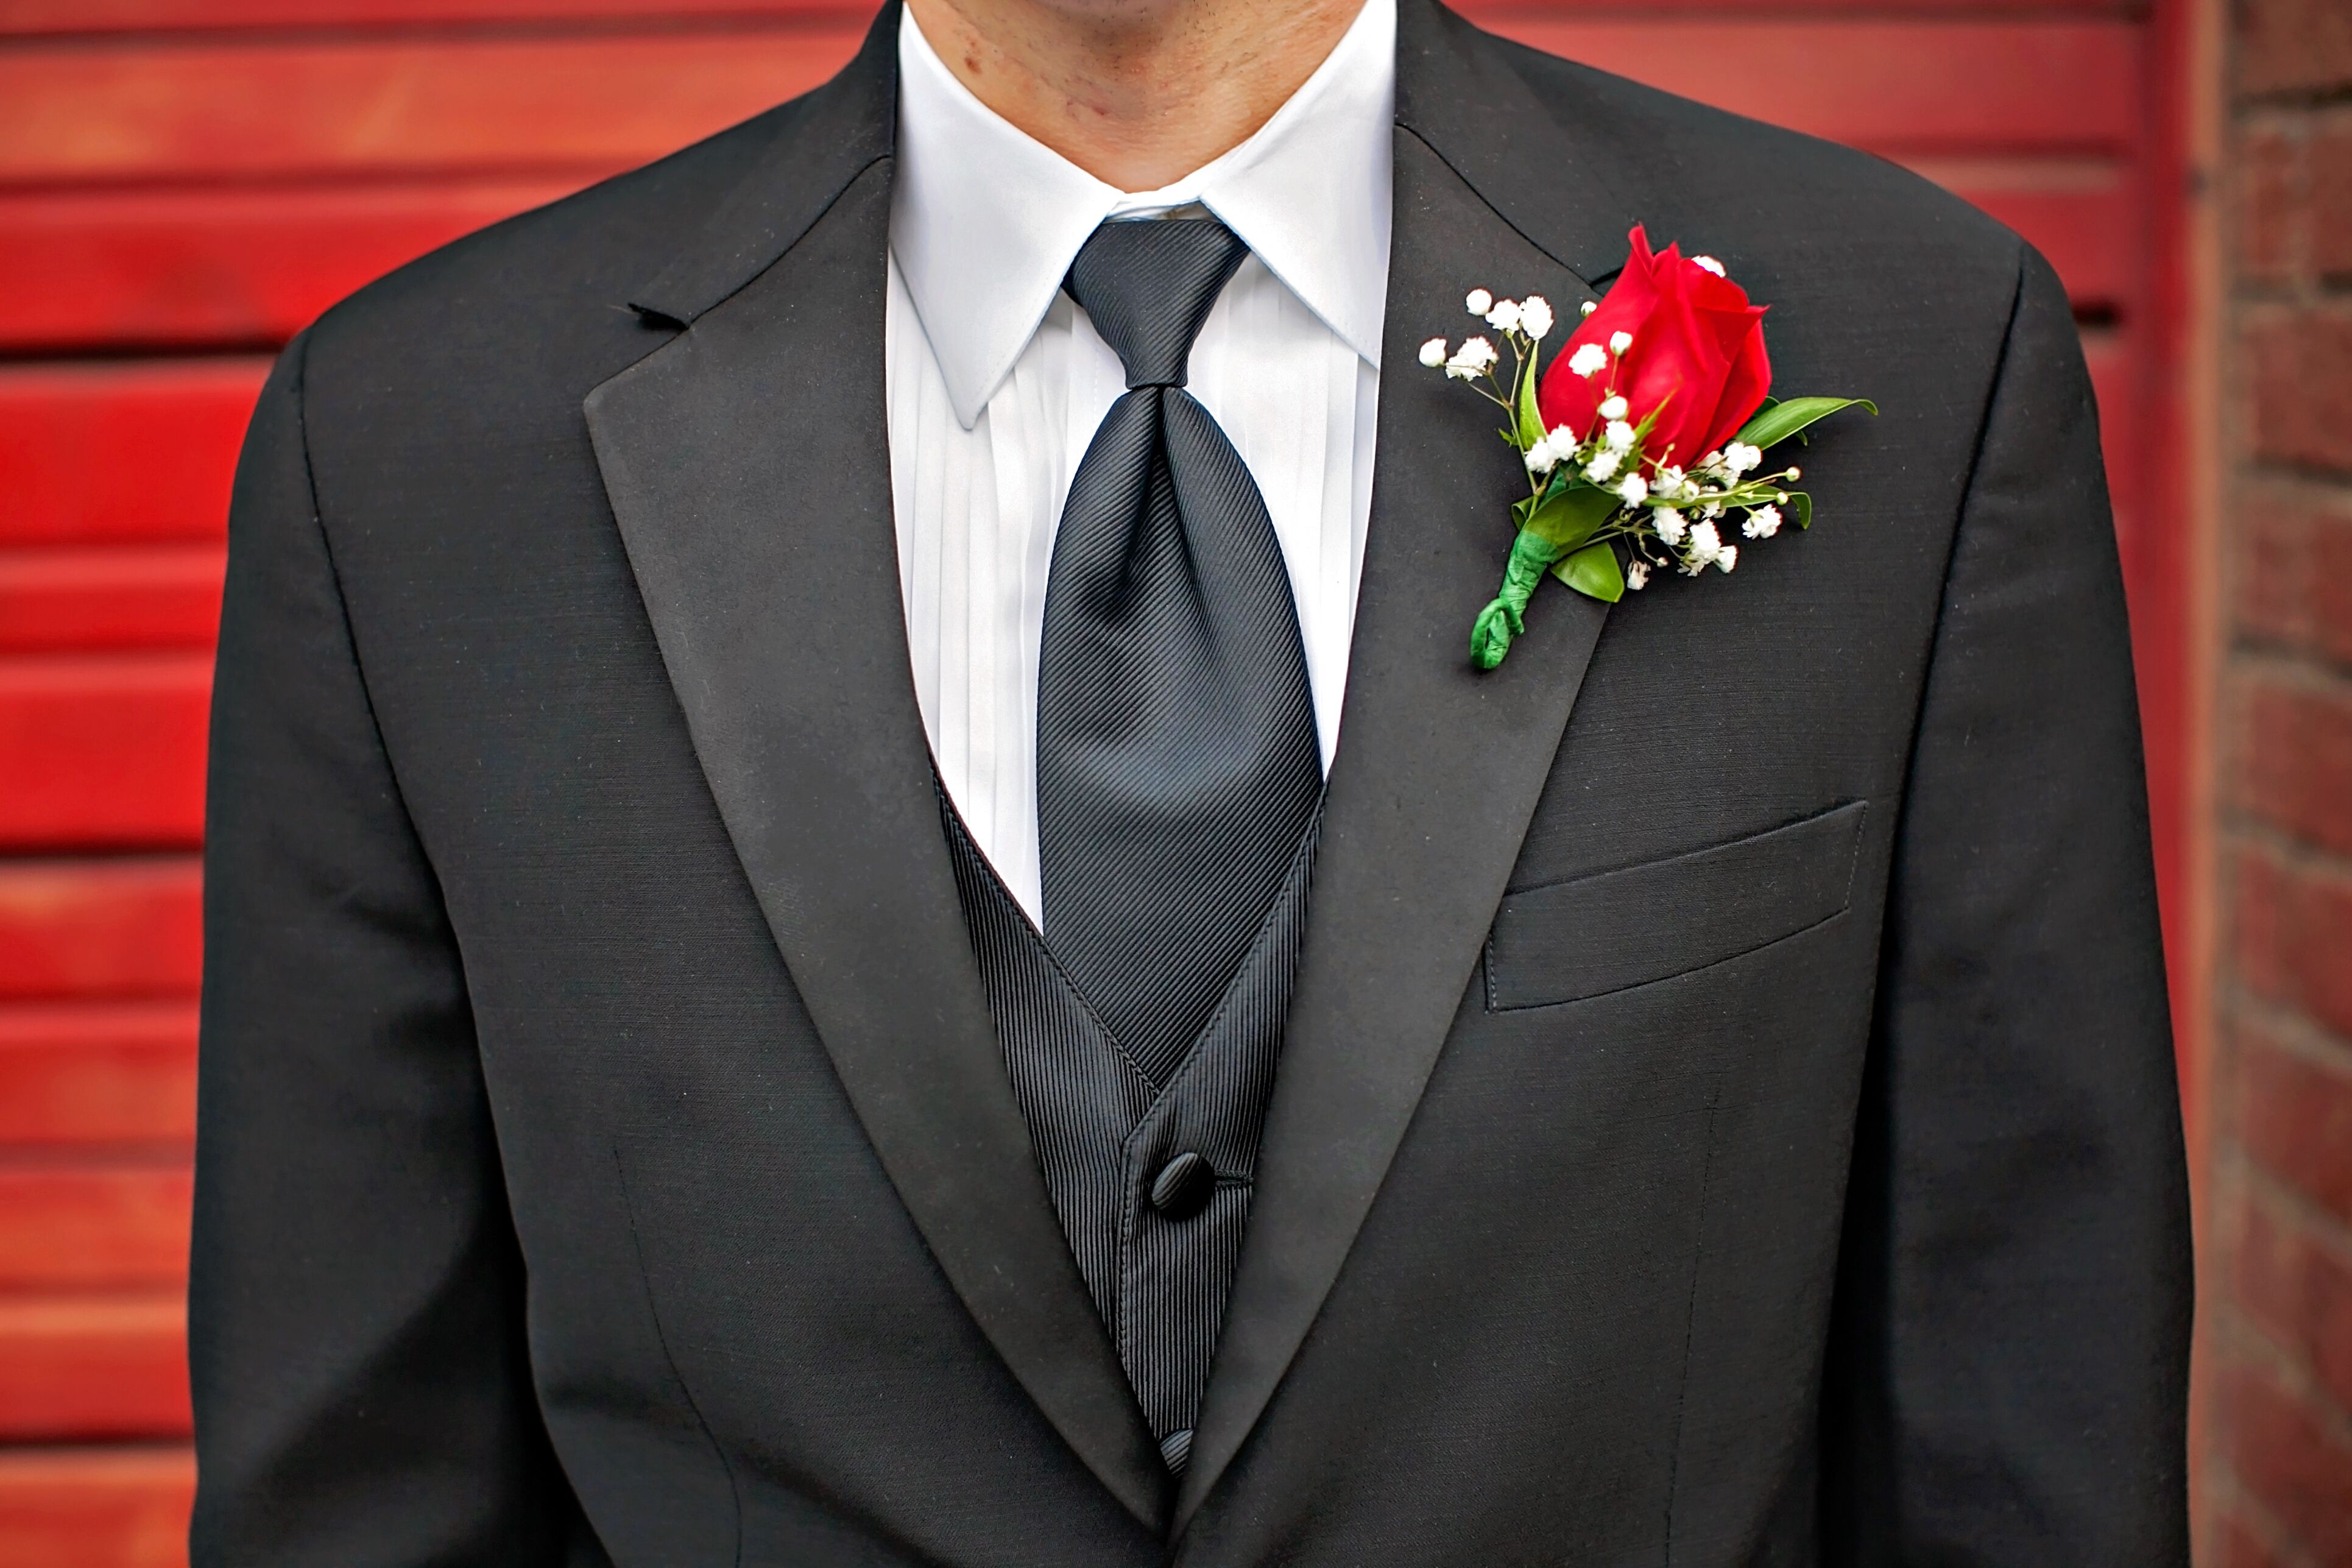 Tuxedo Với Cà Vạt Đỏ: Phong Cách Lịch Lãm Và Sang Trọng